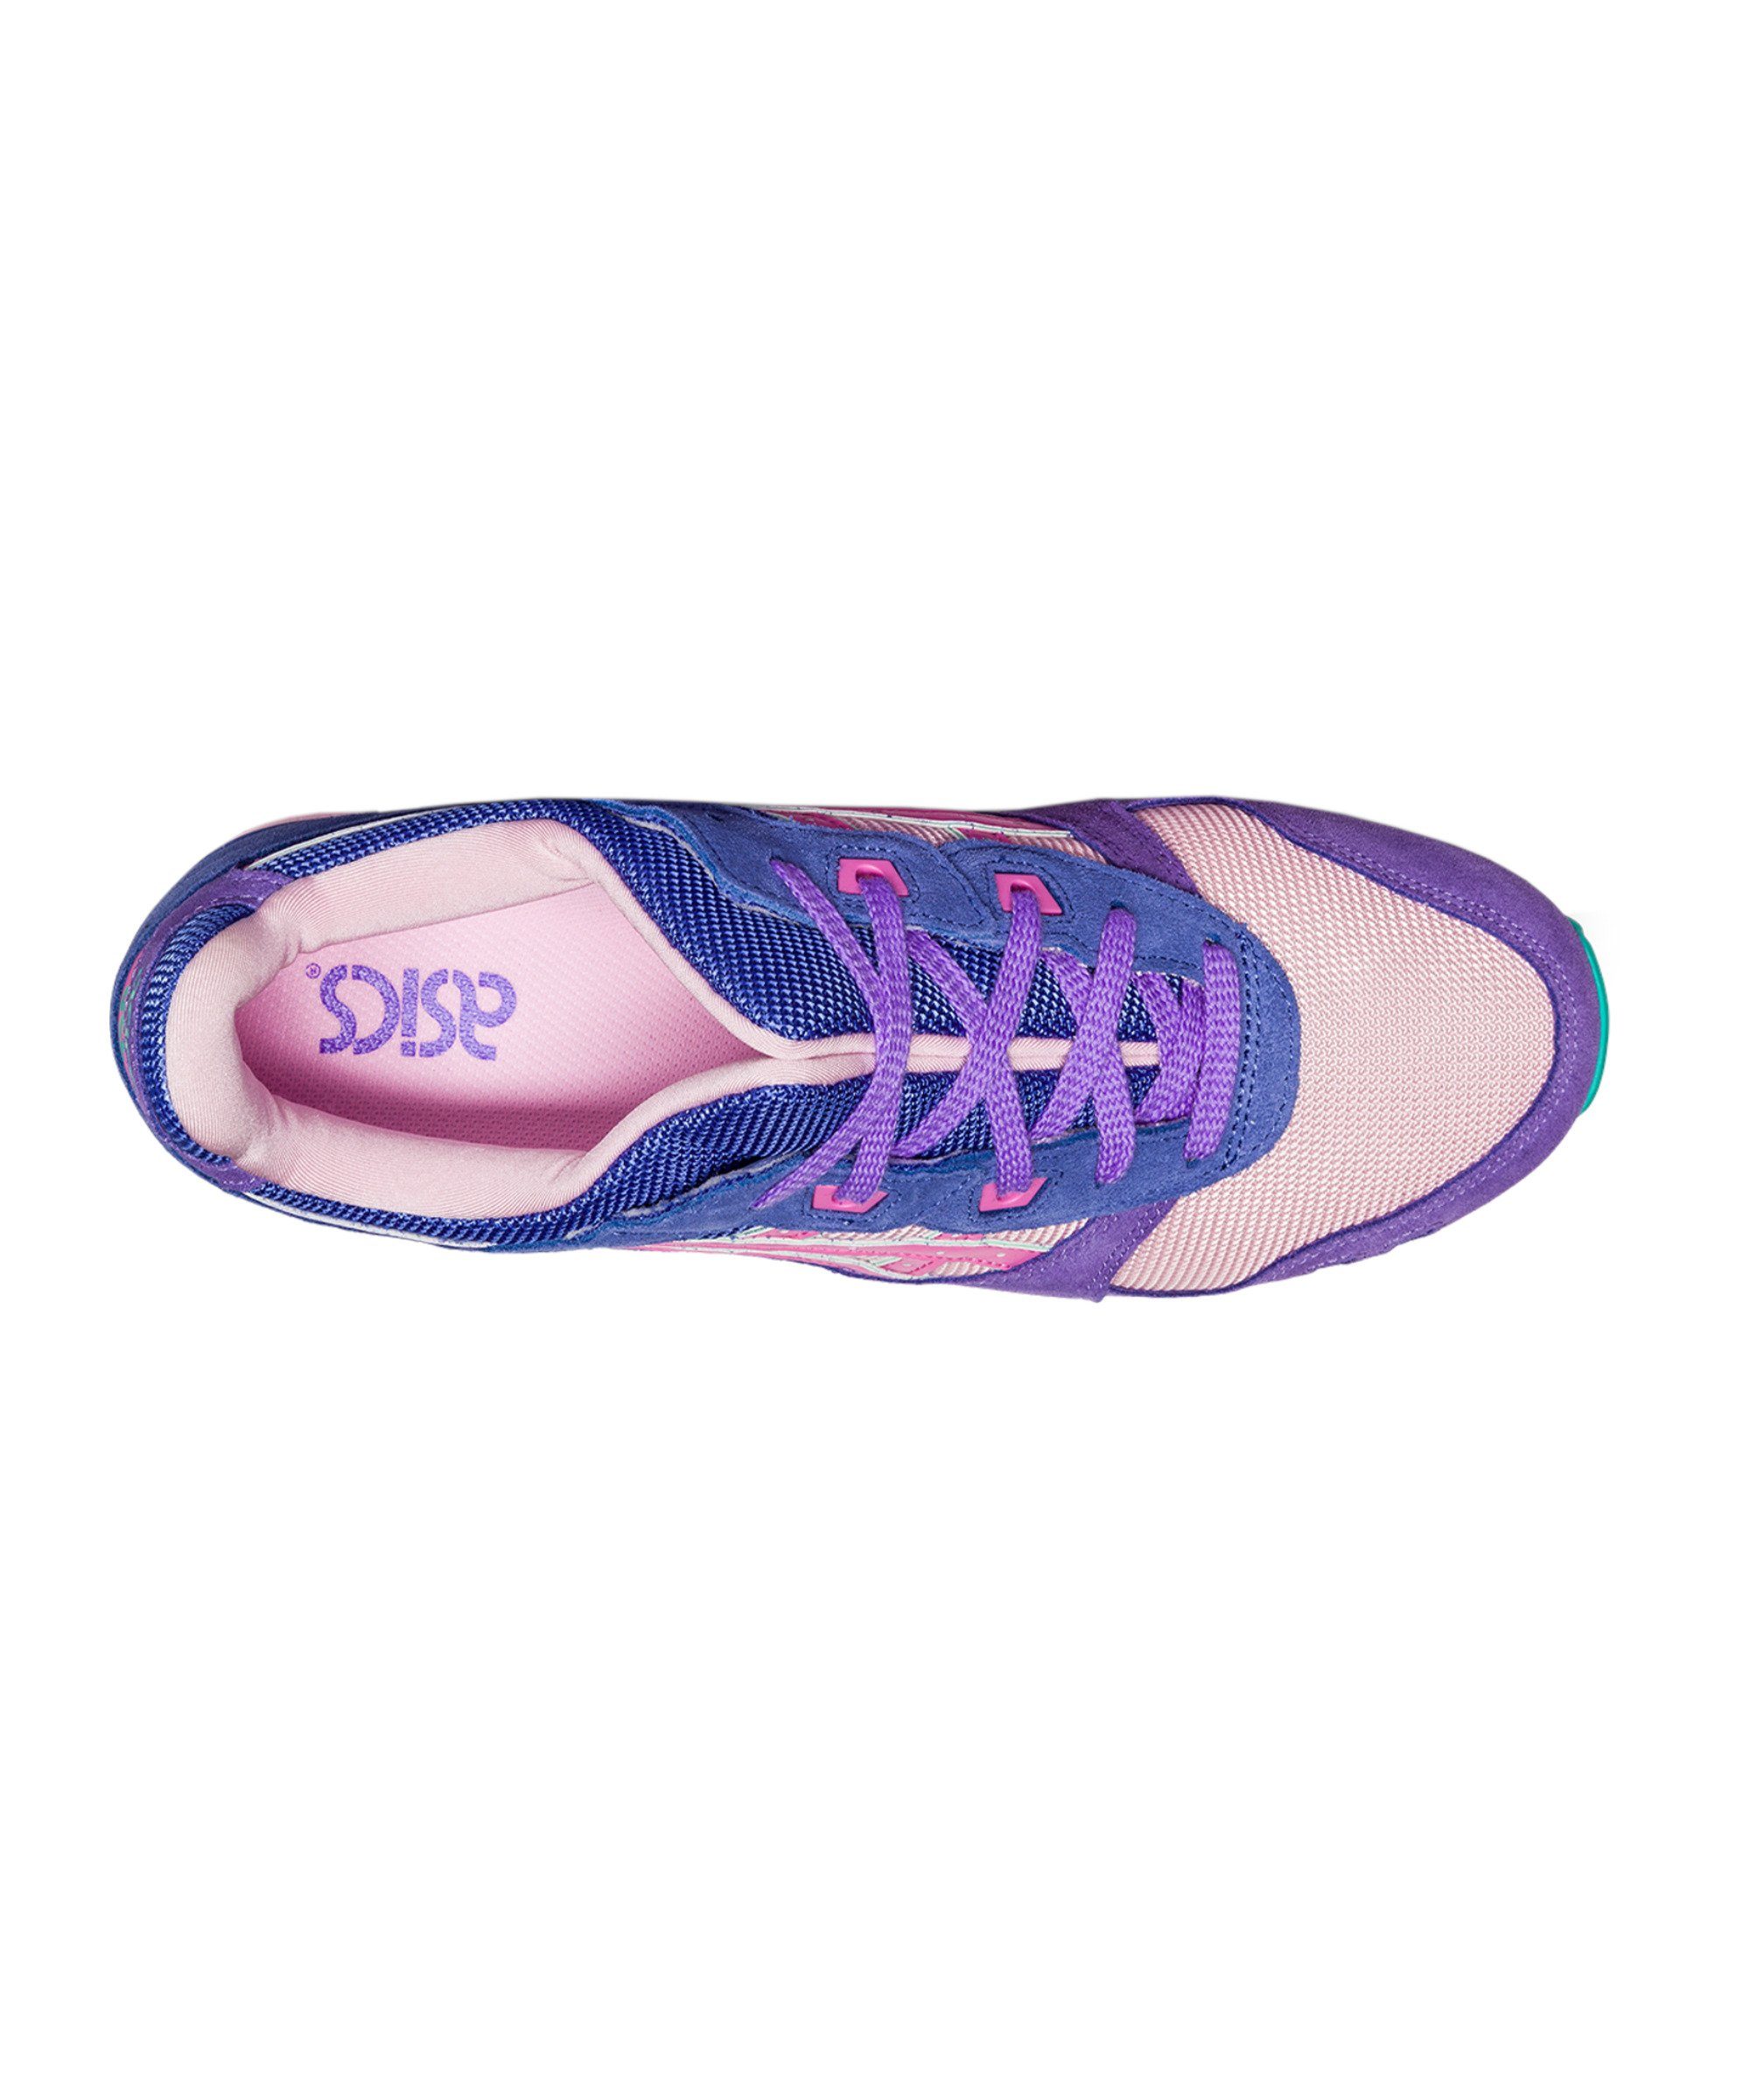 Asics Gel-Lyte III OG Sneaker blaulilarosa